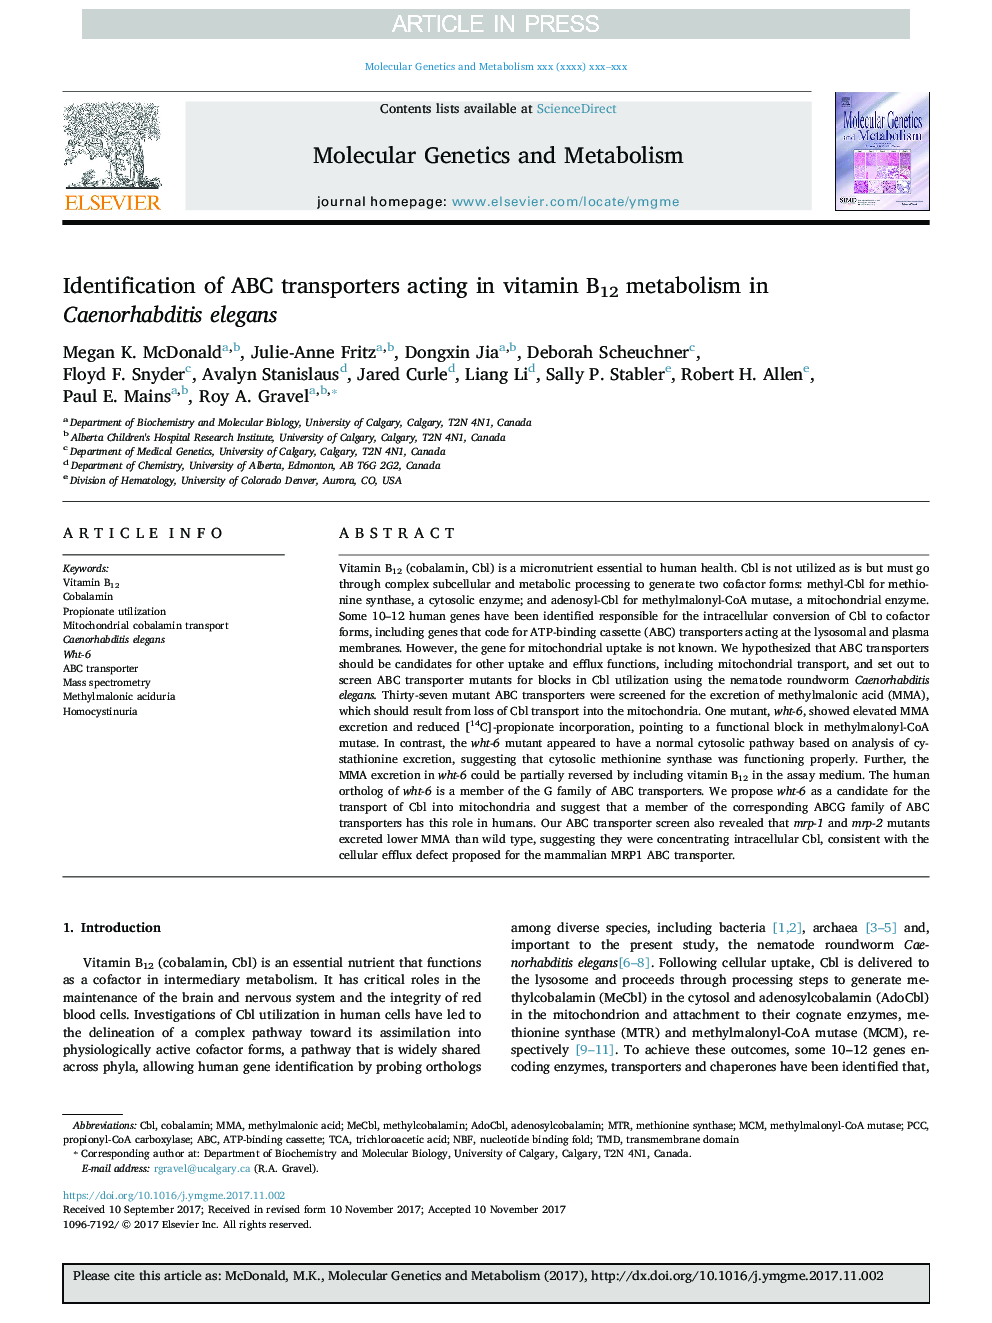 Identification of ABC transporters acting in vitamin B12 metabolism in Caenorhabditis elegans